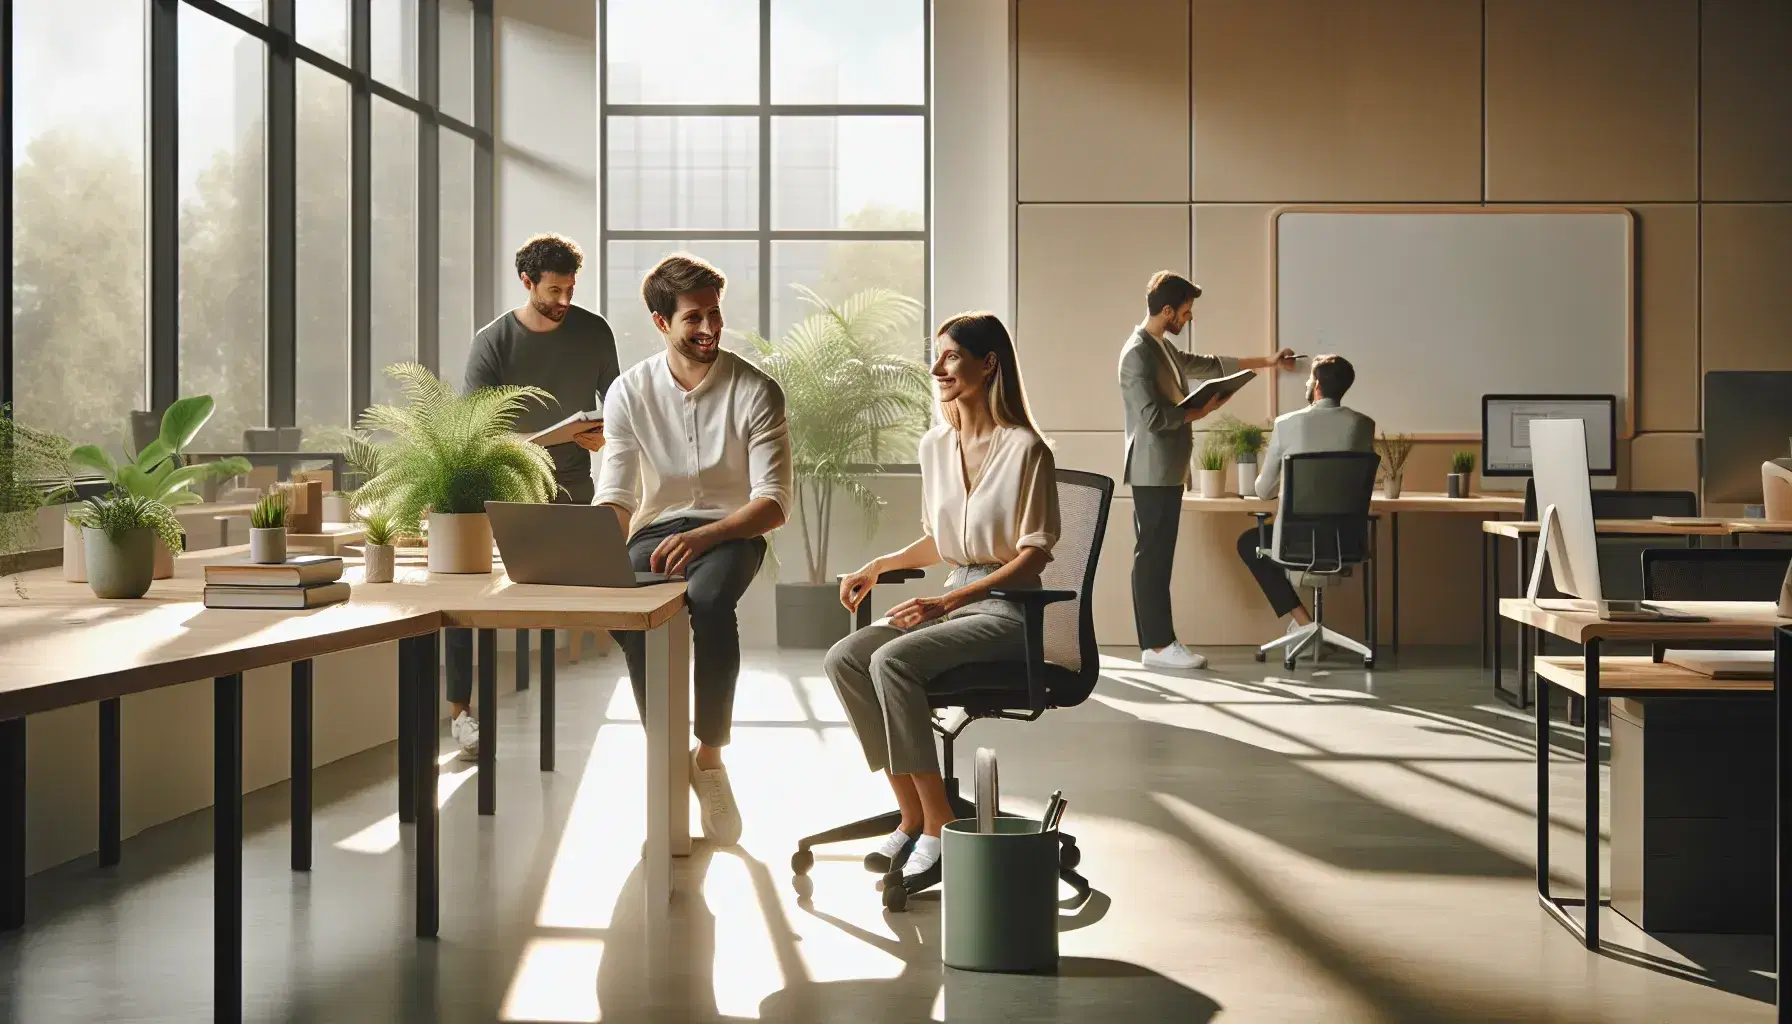 Grupo de trabajadores de oficina colaborando alegremente, con una mujer sonriente sentada frente a su portátil y un hombre de pie con una taza de café, en un ambiente iluminado y decorado con plantas.